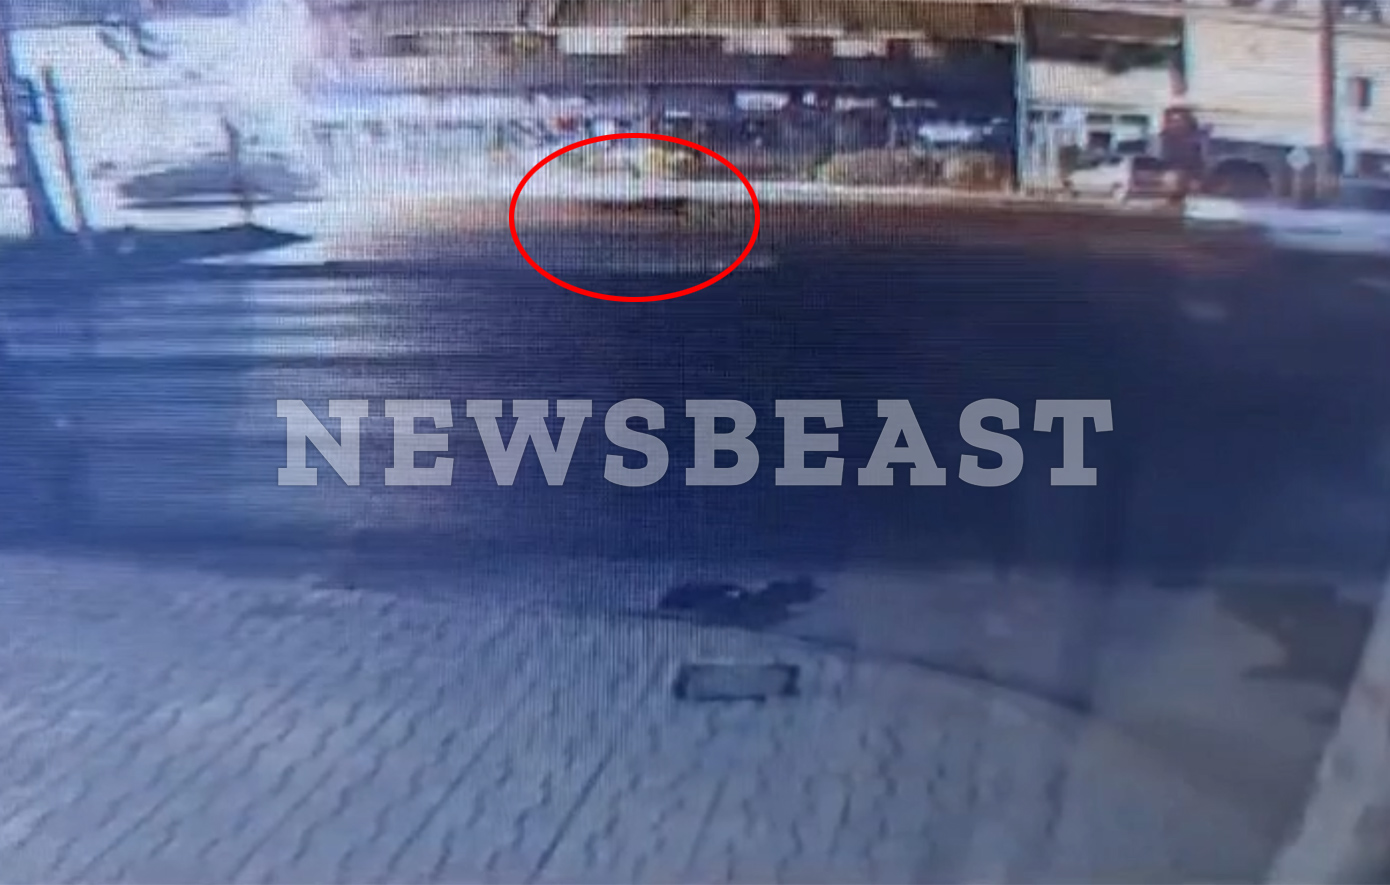 Πληροφορίες για τη 17χρονη που παρασύρθηκε από δύο αυτοκίνητα στη λεωφόρο Αθηνών αναζητά η ΕΛ.ΑΣ.